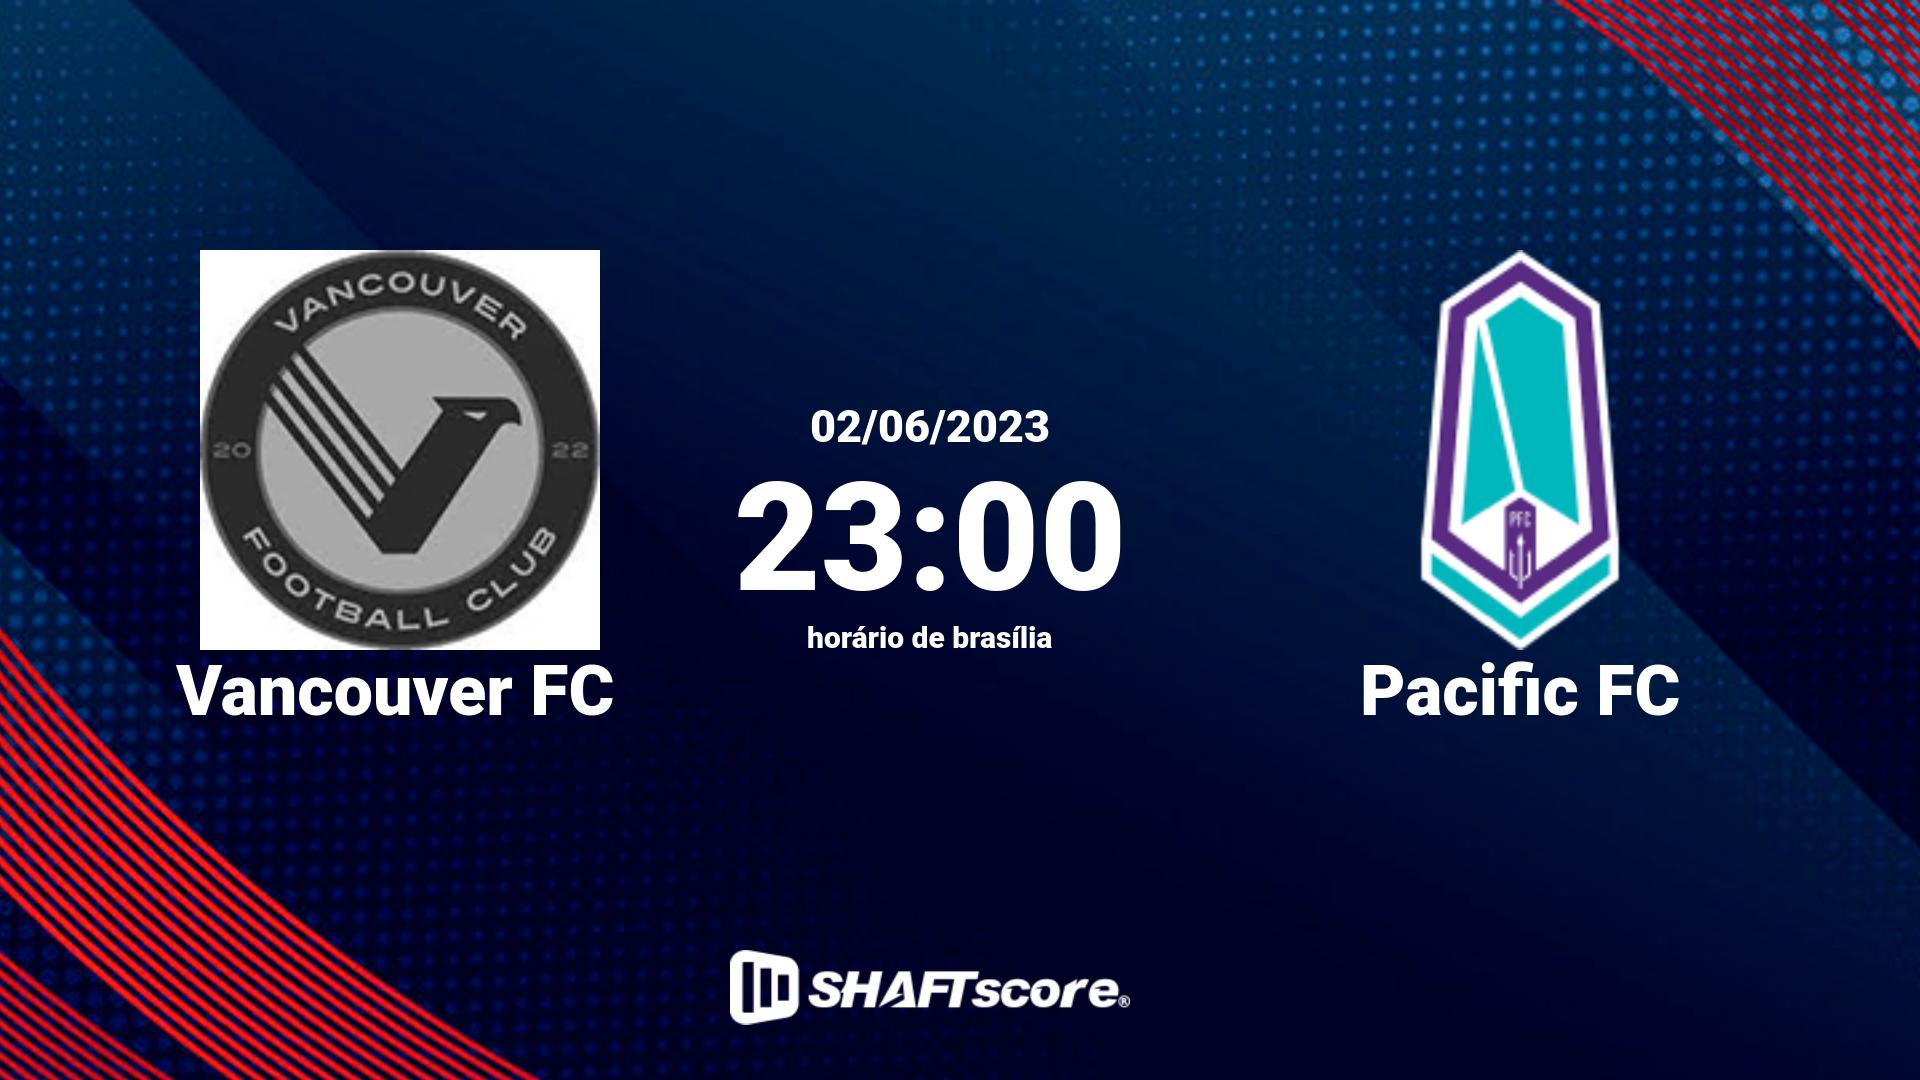 Estatísticas do jogo Vancouver FC vs Pacific FC 02.06 23:00